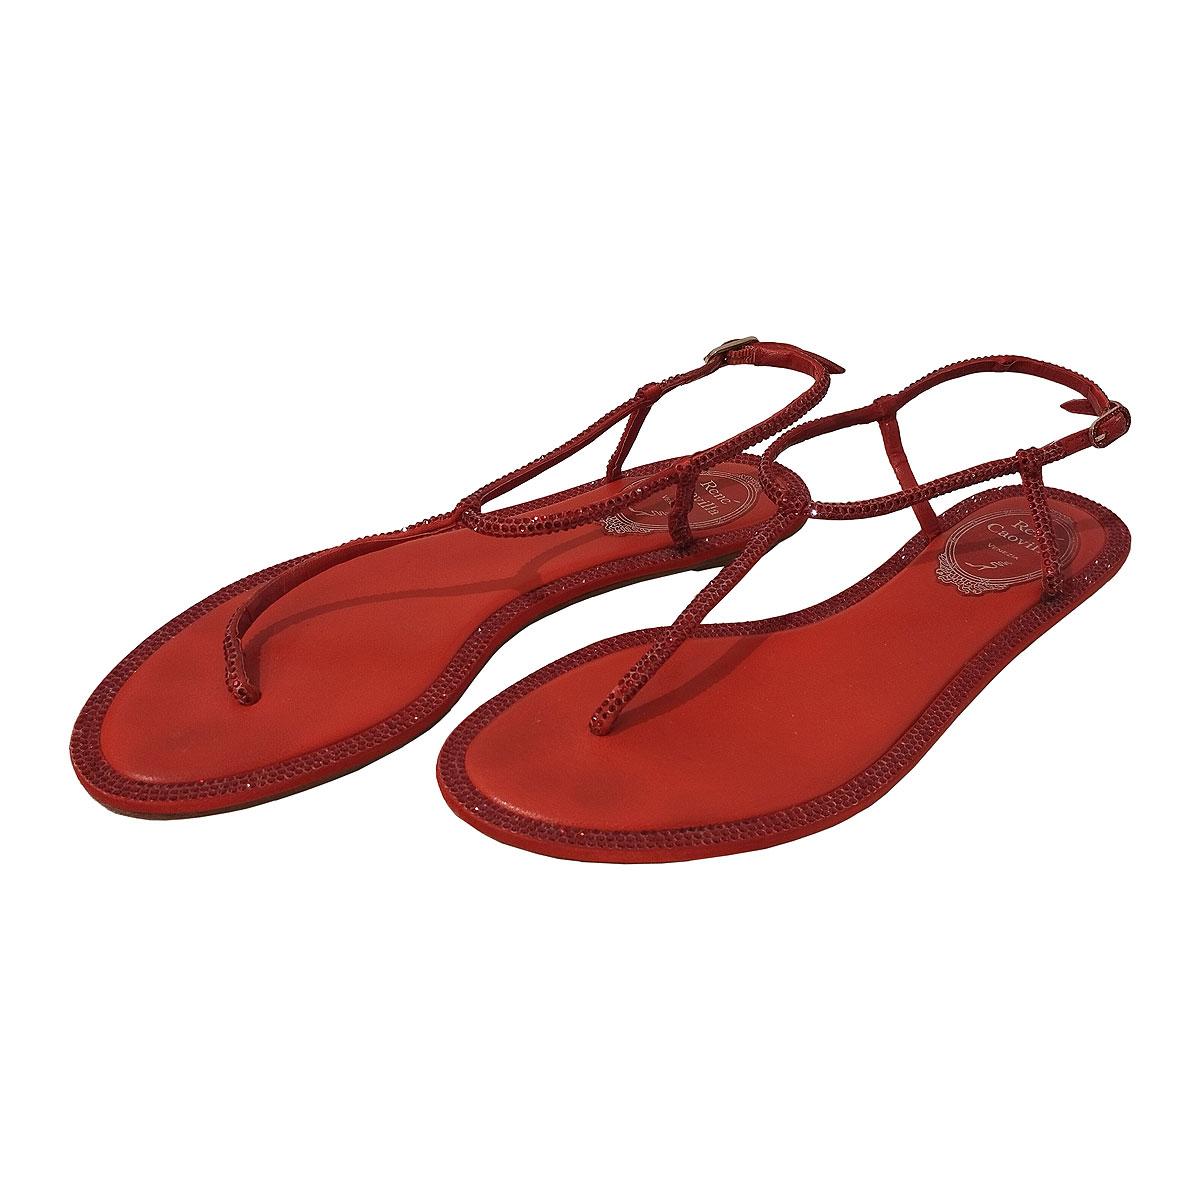 Fantastique Christian Louboutin  sandales plates
Cristaux
Couleur rouge corail
Cuir
Superflat
Hauteur du talon cm 1 (0,39 inches)
Avec sac à poussière
Prix original € 970 (toujours dans la collection)
Livraison rapide dans le monde entier incluse